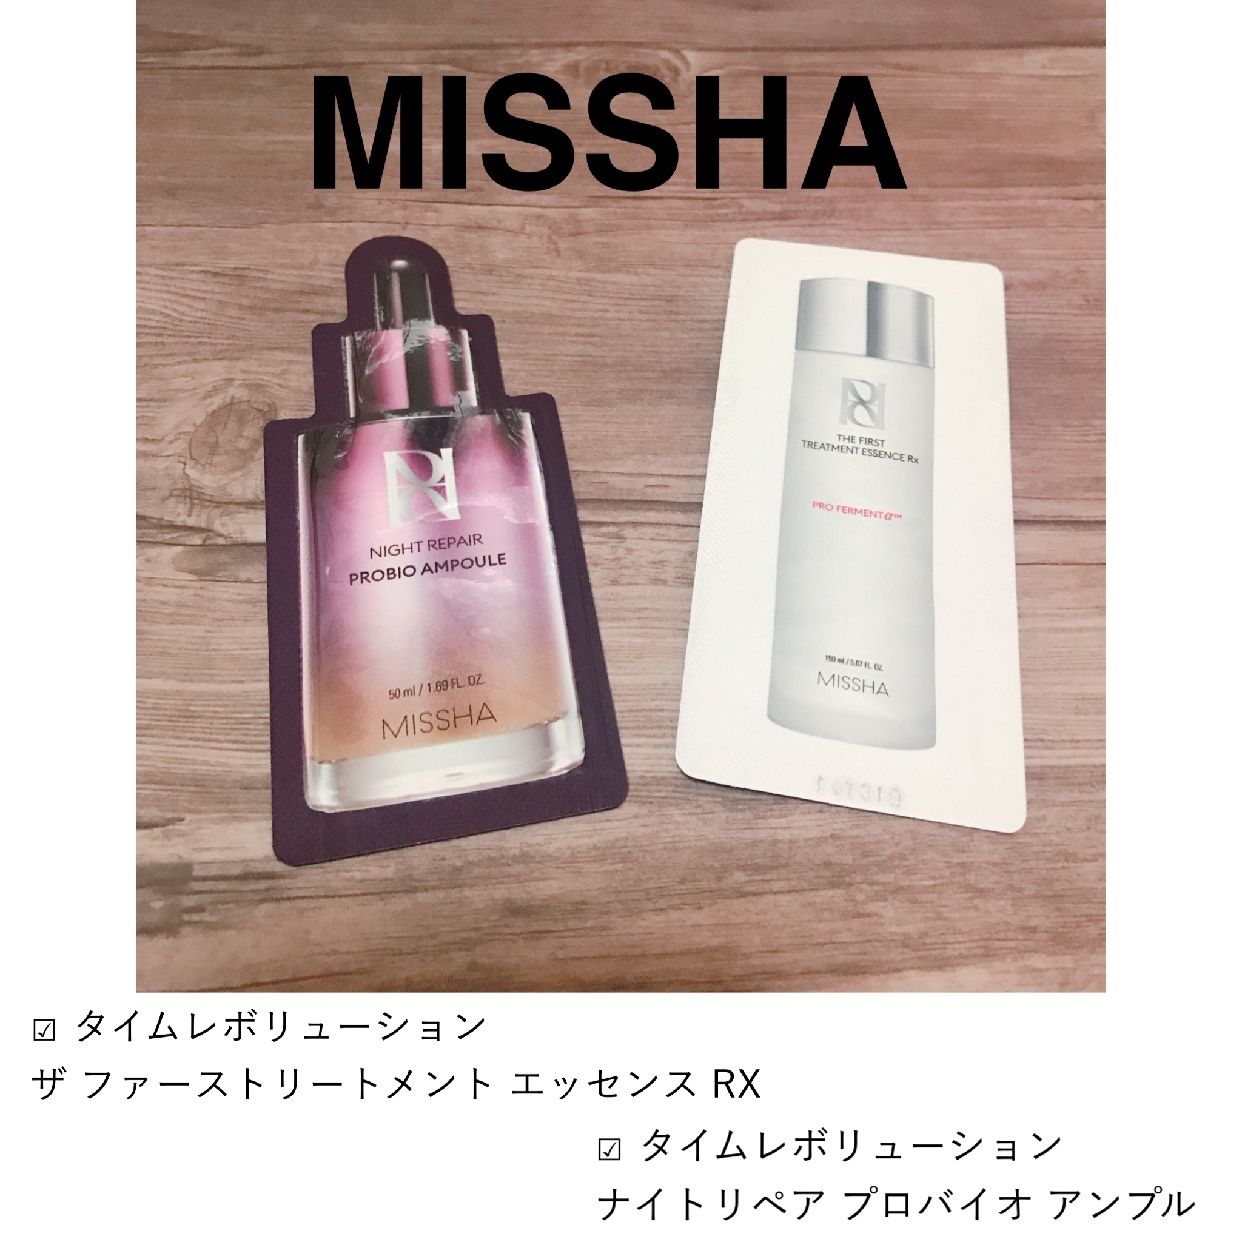 MISSHA(ミシャ) レボリューション タイム ザ ファースト トリートメント エッセンス RXを使ったMarukoさんのクチコミ画像1